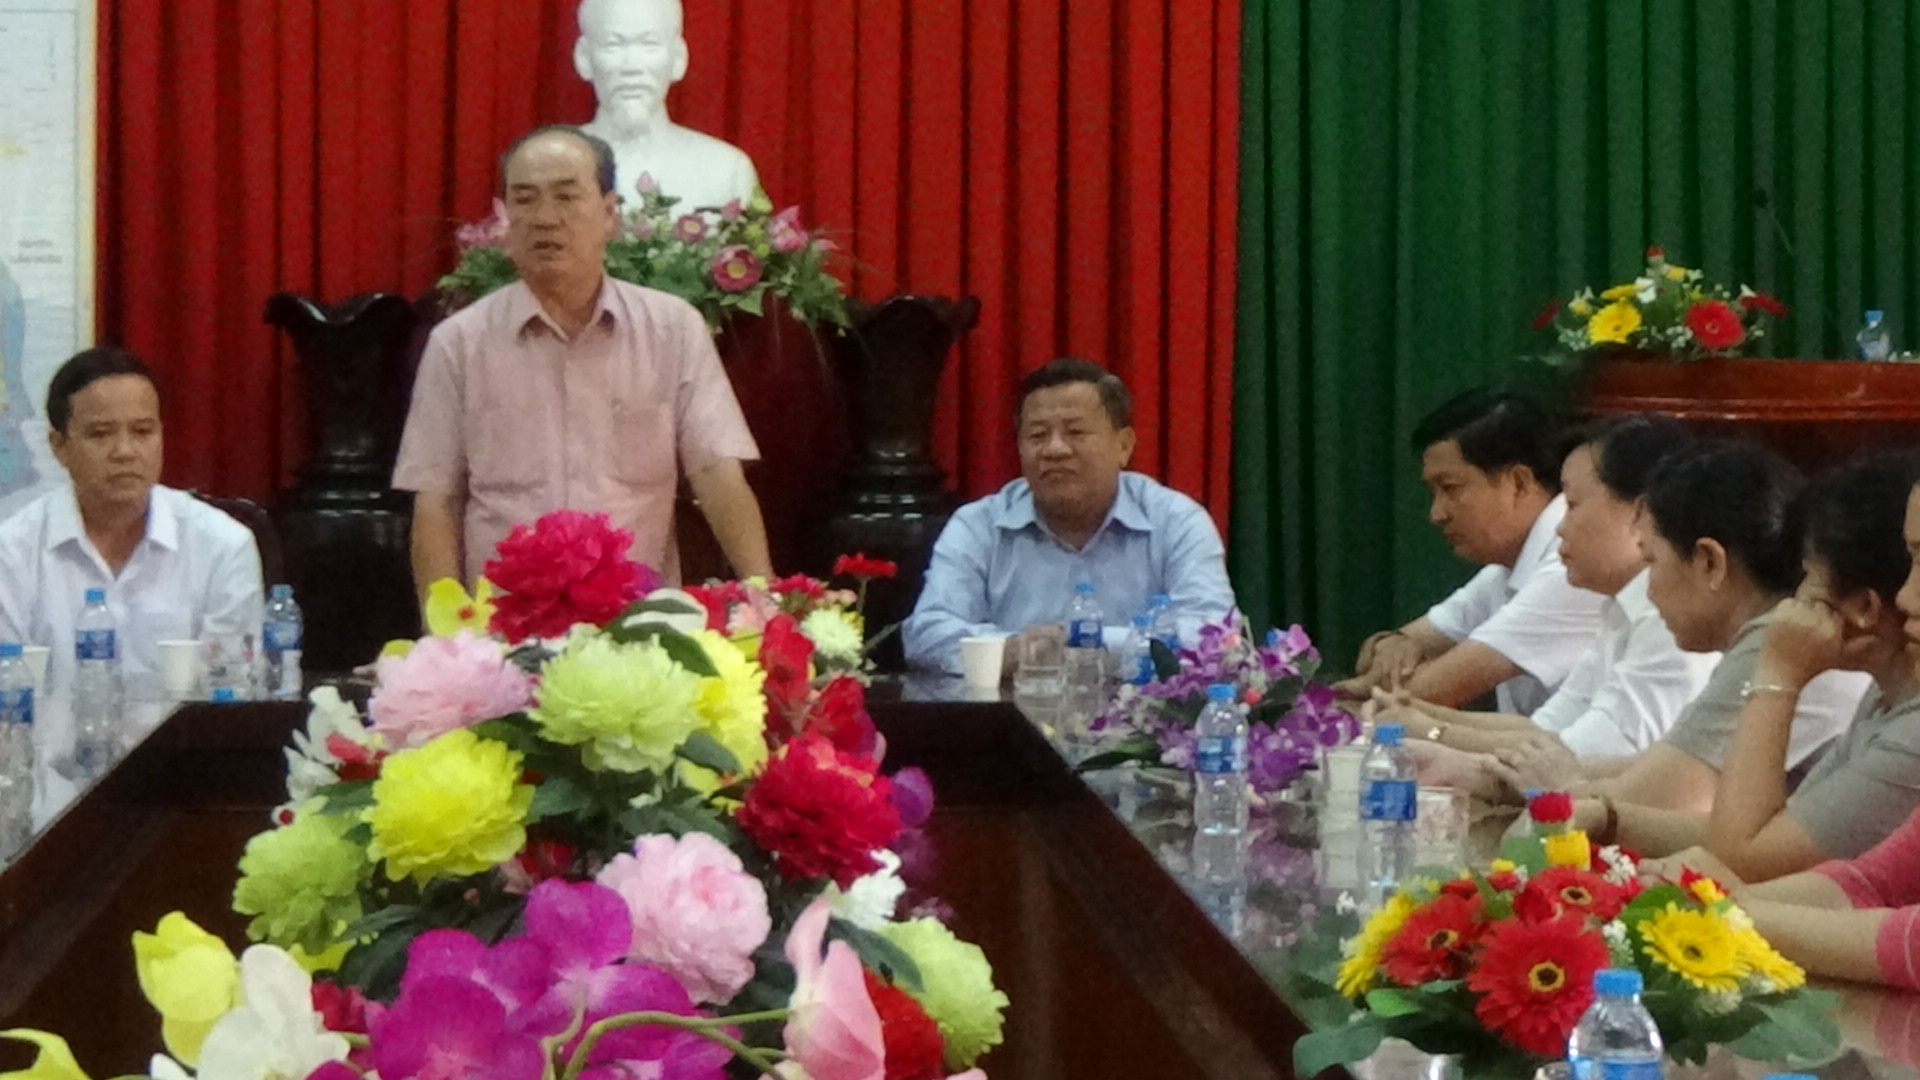 Cục Thi hành án dân sự tỉnh Long An trao đổi về công tác THADS tại huyện Châu Thành